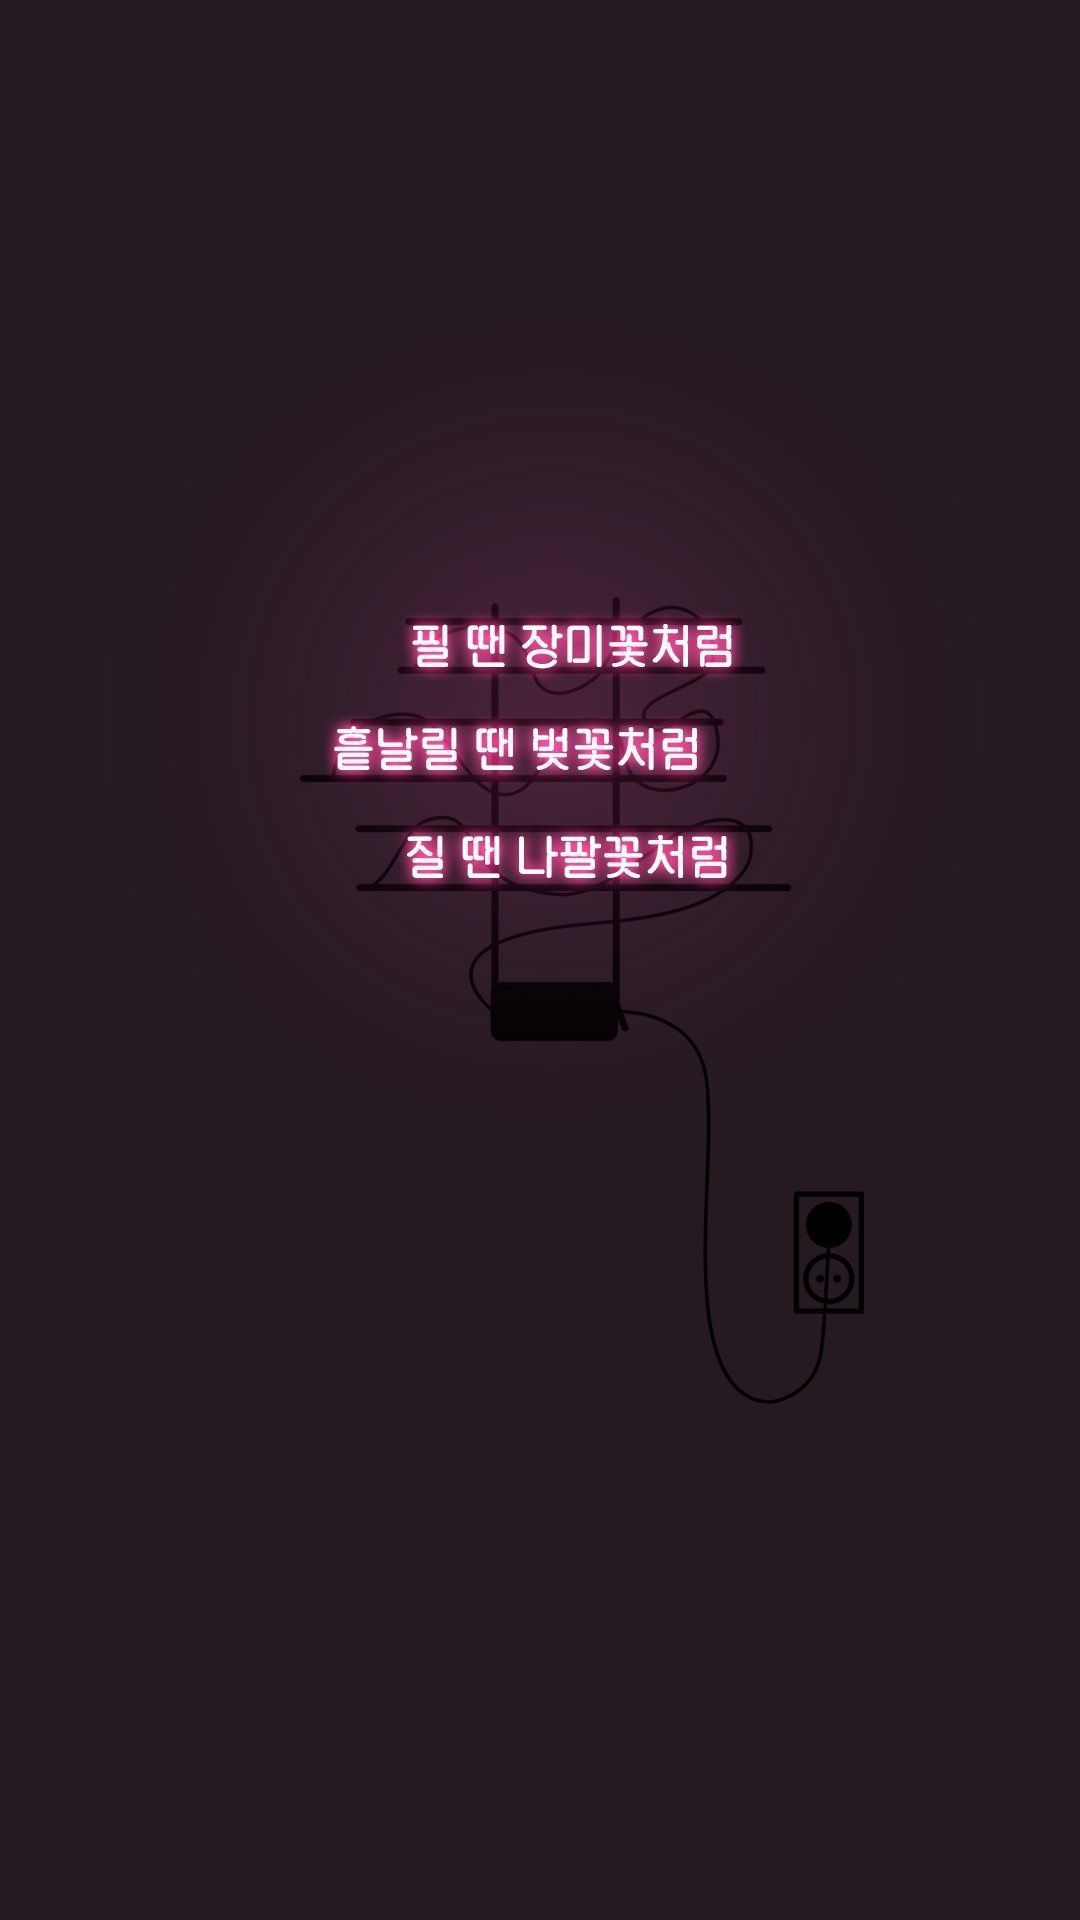 ㅂㅌㅅㄴㄷ. Bts wallpaper, Bts lyric, Korea wallpaper